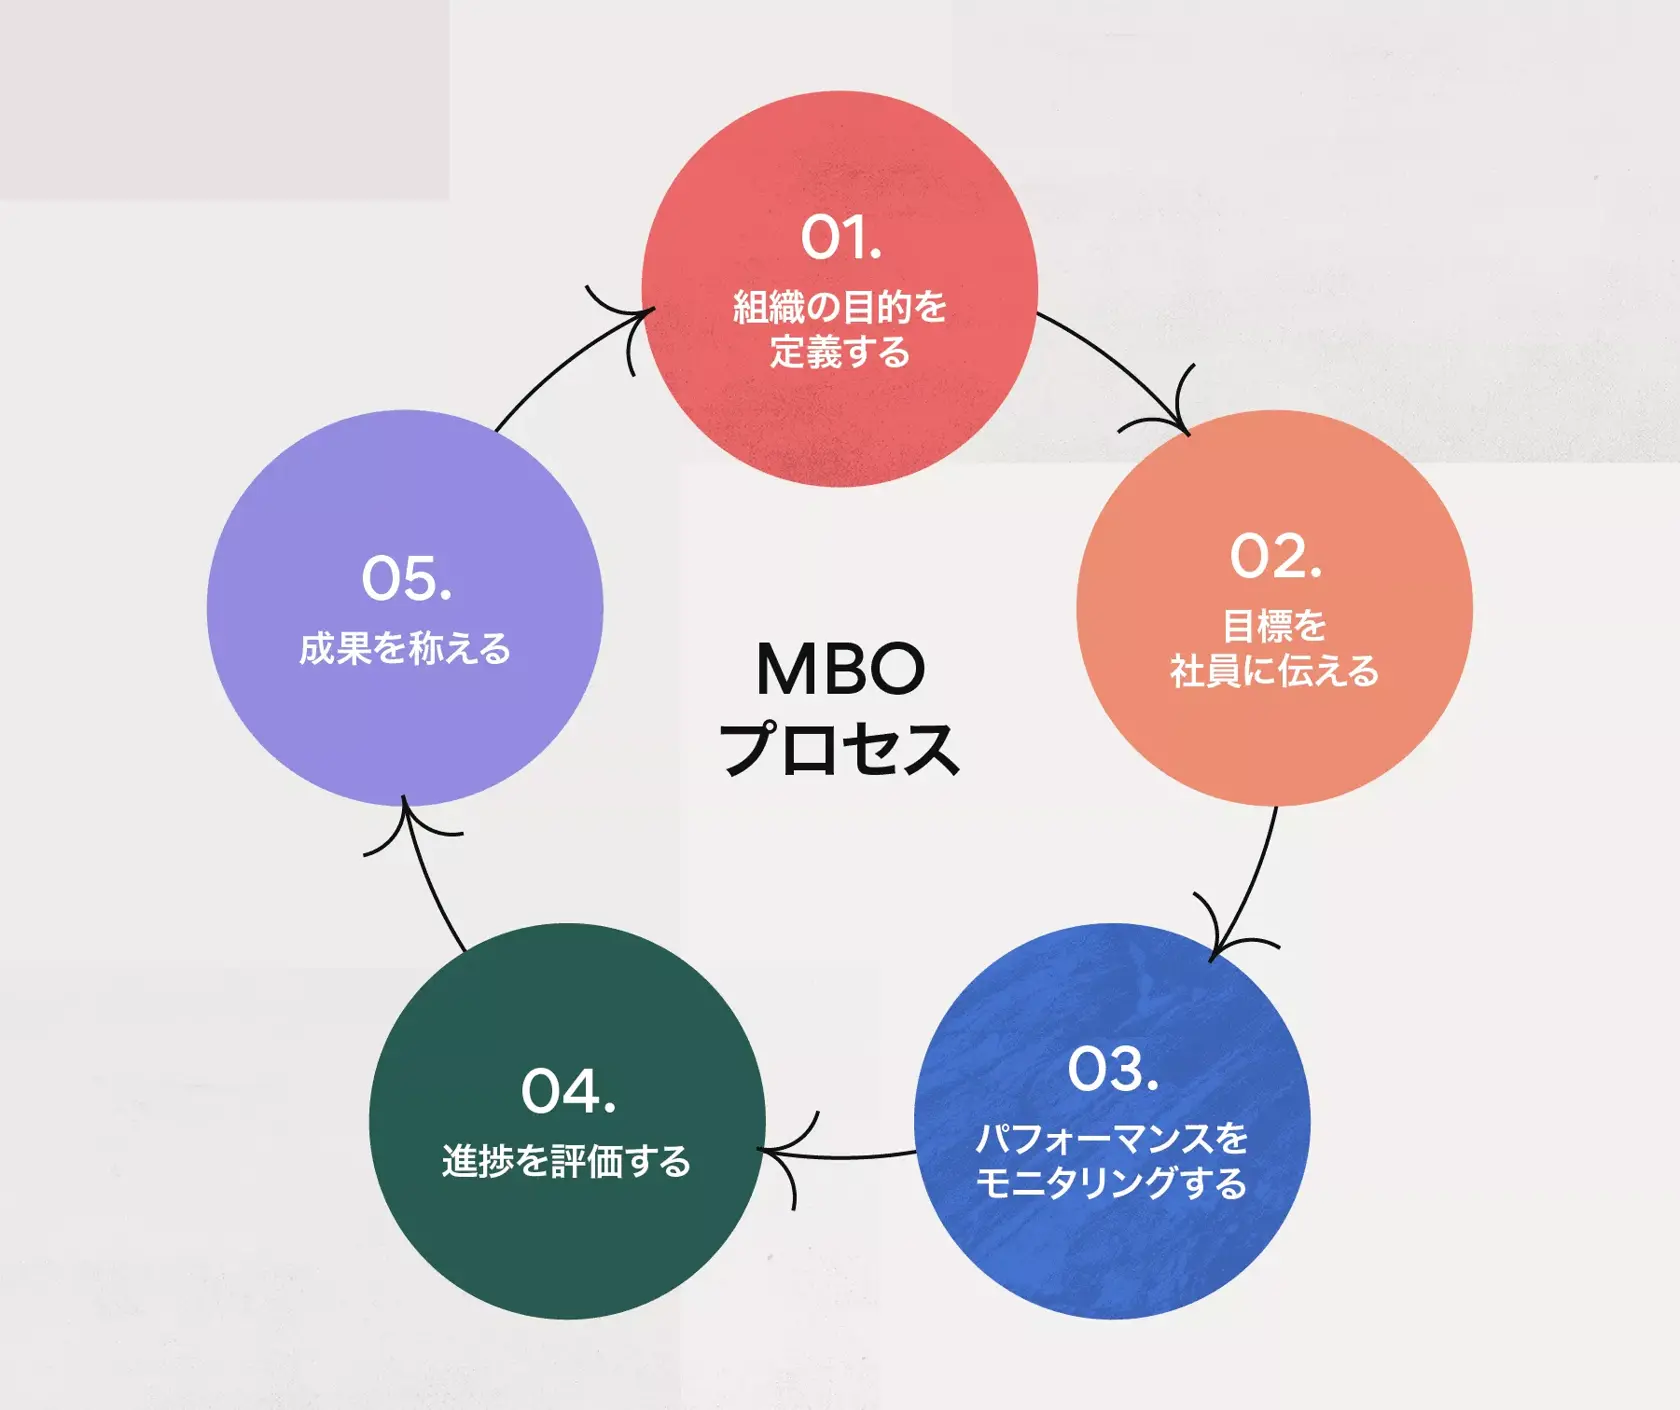 MBO プロセスの 5 つのステップ